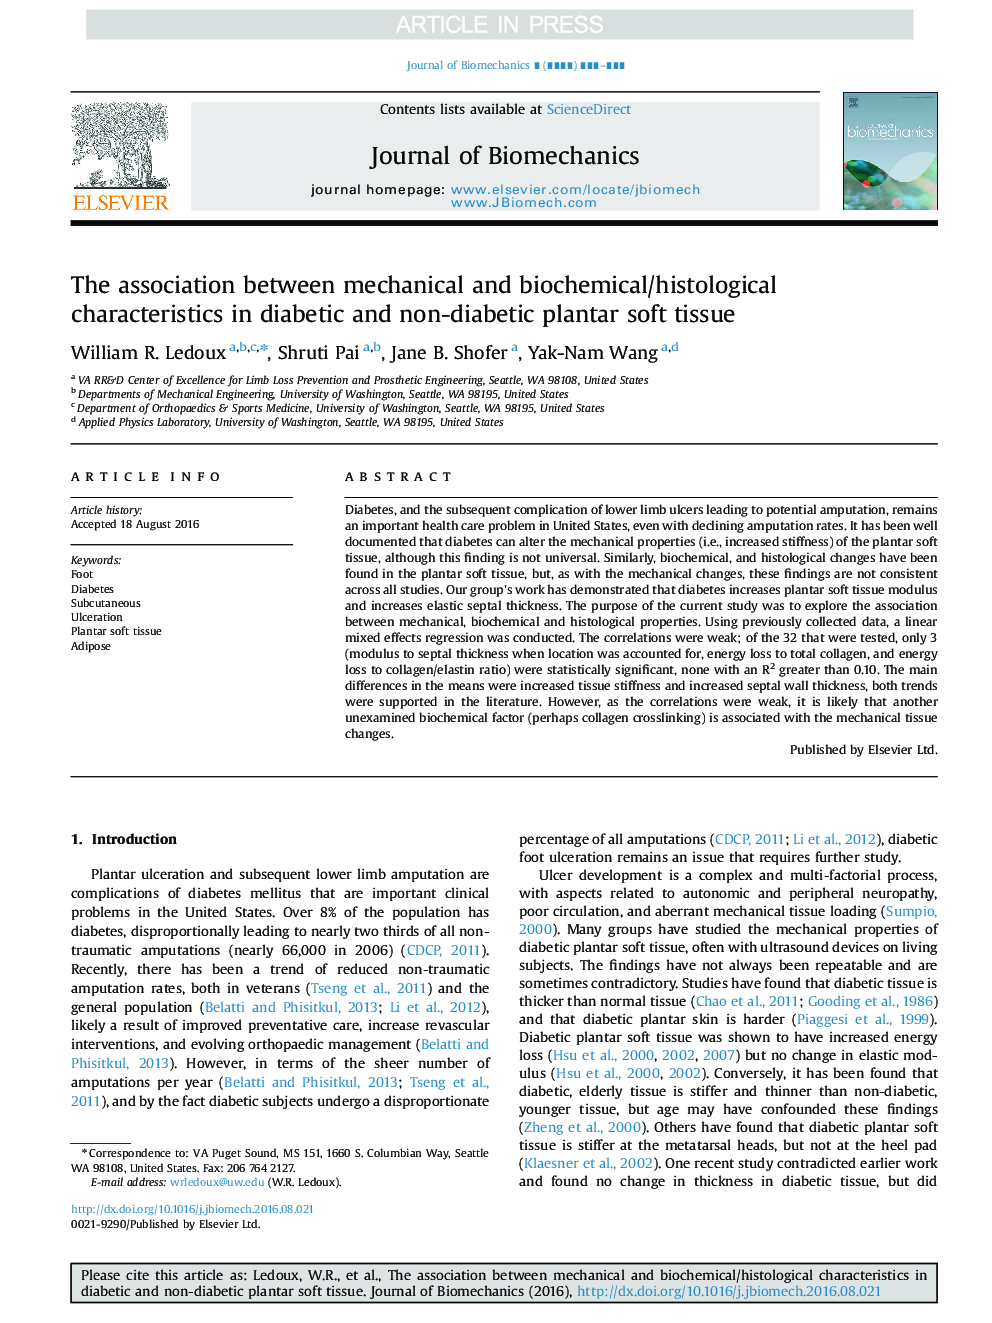 ارتباط بین ویژگی های مکانیکی و بیوشیمیایی / بافت شناختی در بافت نرم دیابتی و غیر دیابتی کفاف نرم 